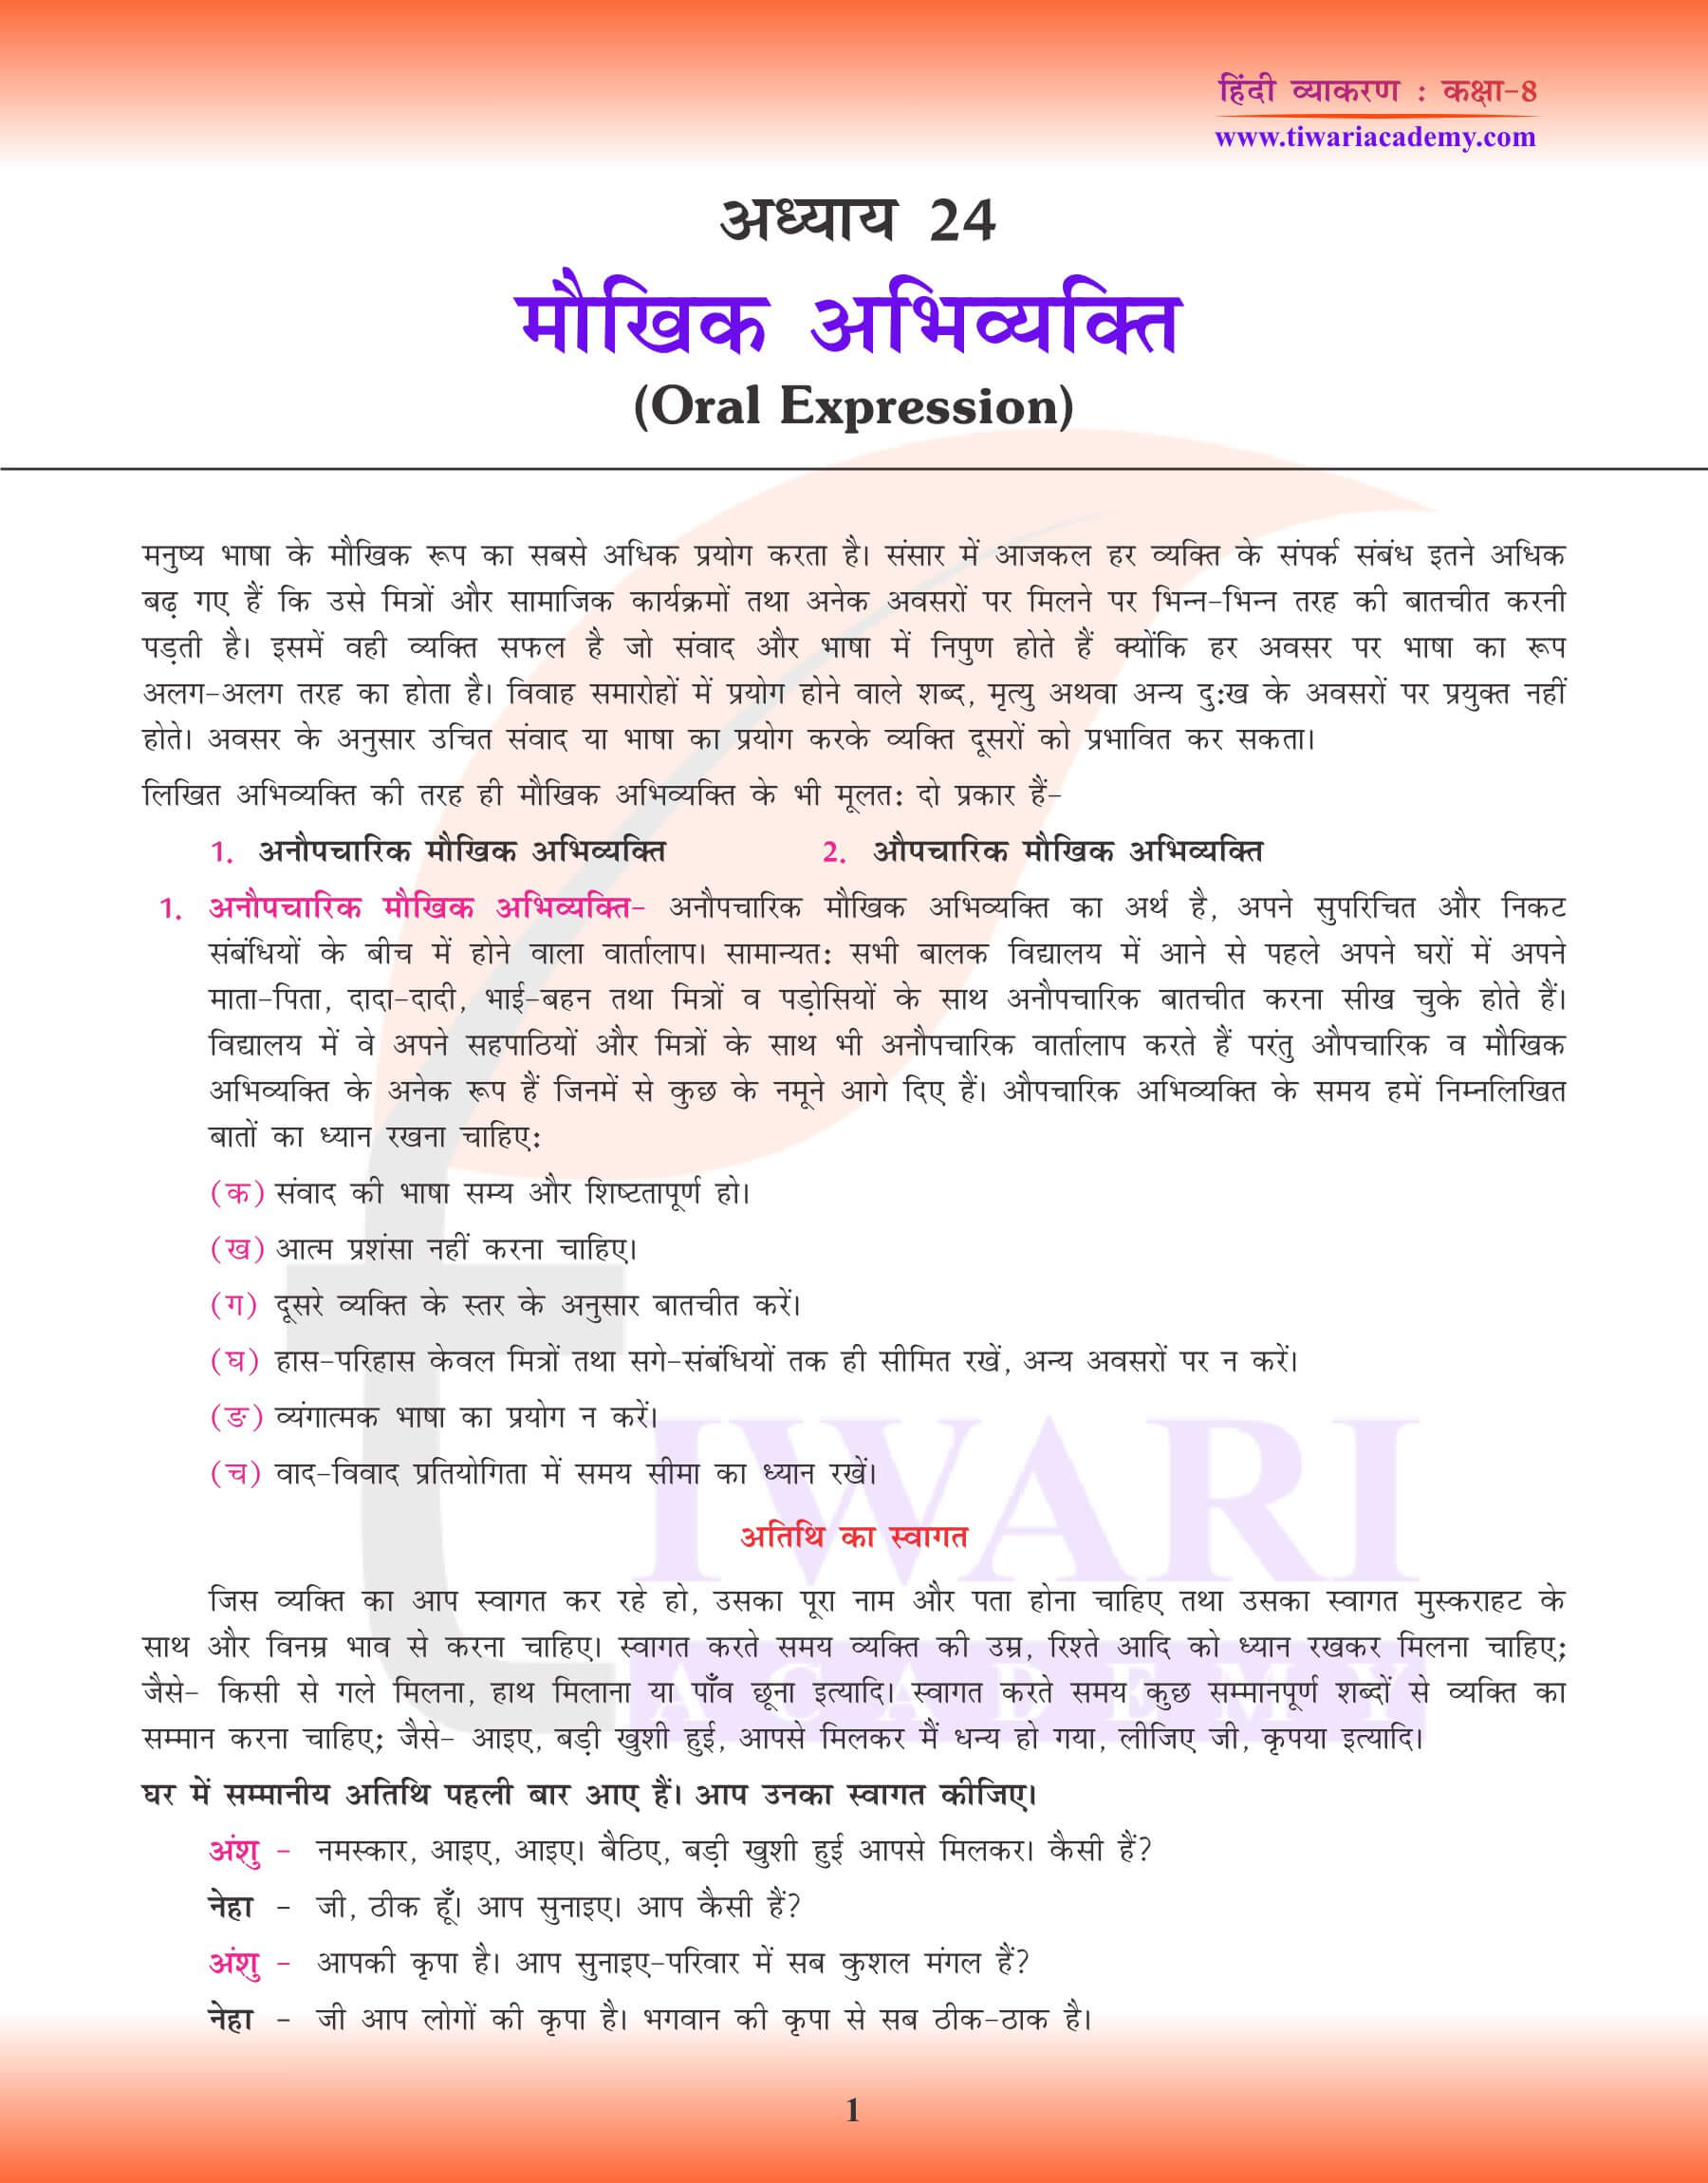 कक्षा 8 हिंदी व्याकरण में मौखिक अभिव्यक्ति के लिए अभ्यास